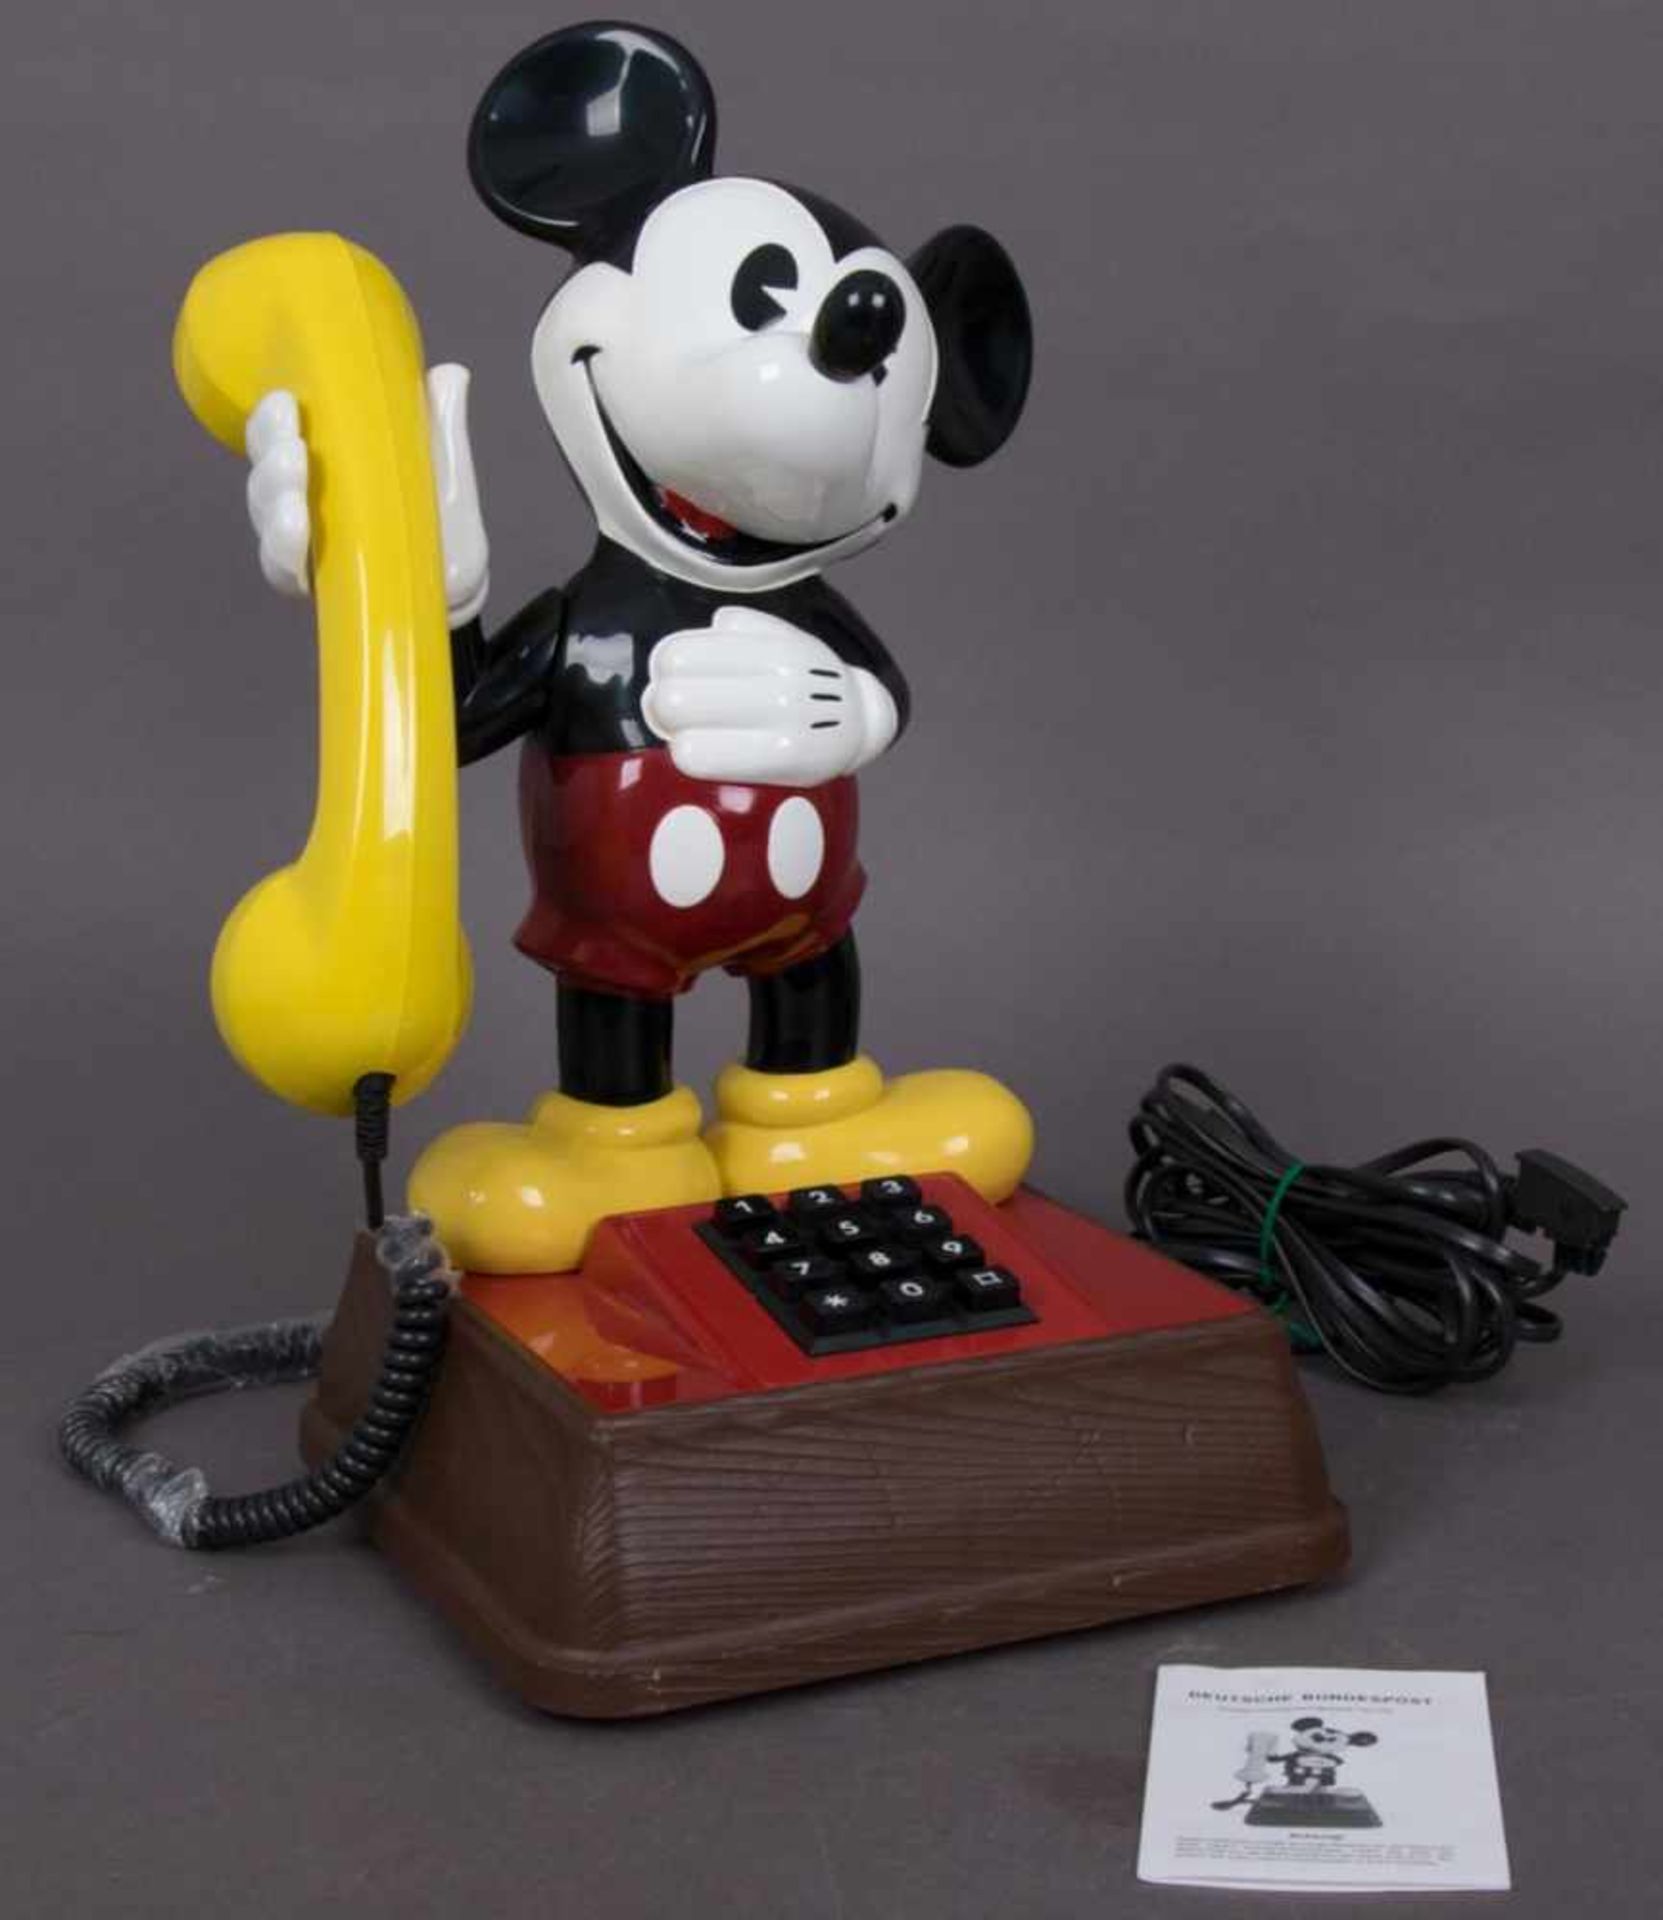 MICKY MAUS-TELEFON, Typ "TEL 322". Höhe ca. 38,5 cm. Analoges Telefon mit Drucktasten, wurde nur als